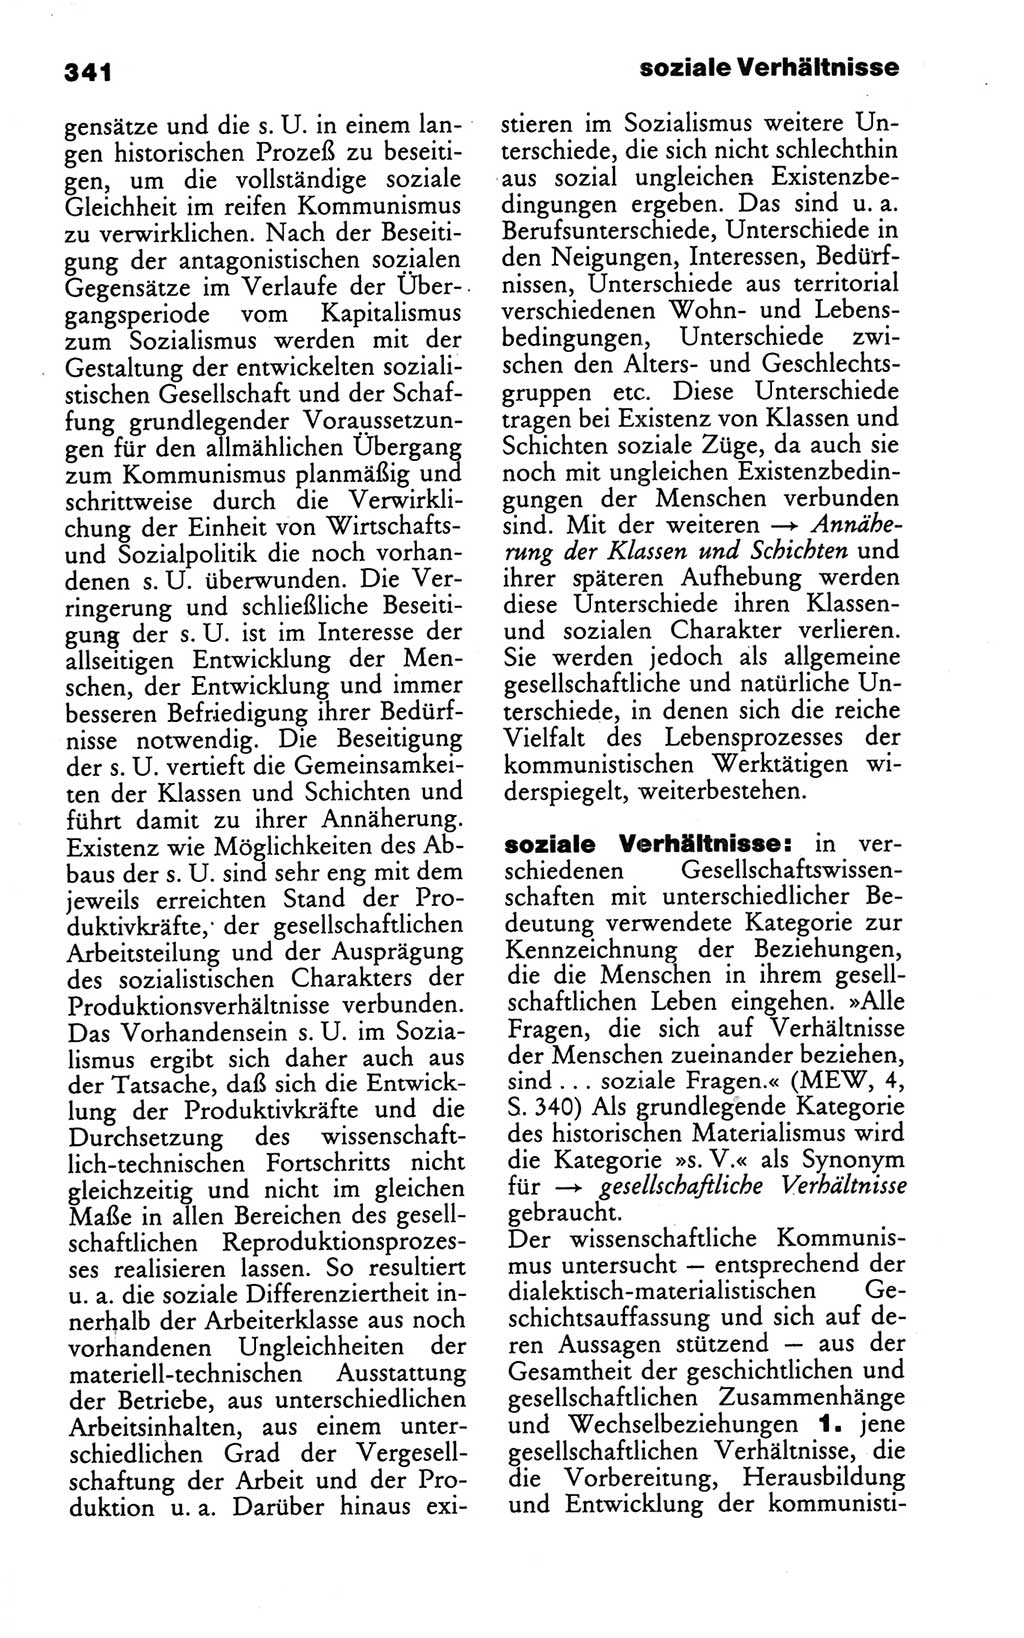 Wörterbuch des wissenschaftlichen Kommunismus [Deutsche Demokratische Republik (DDR)] 1986, Seite 341 (Wb. wiss. Komm. DDR 1986, S. 341)